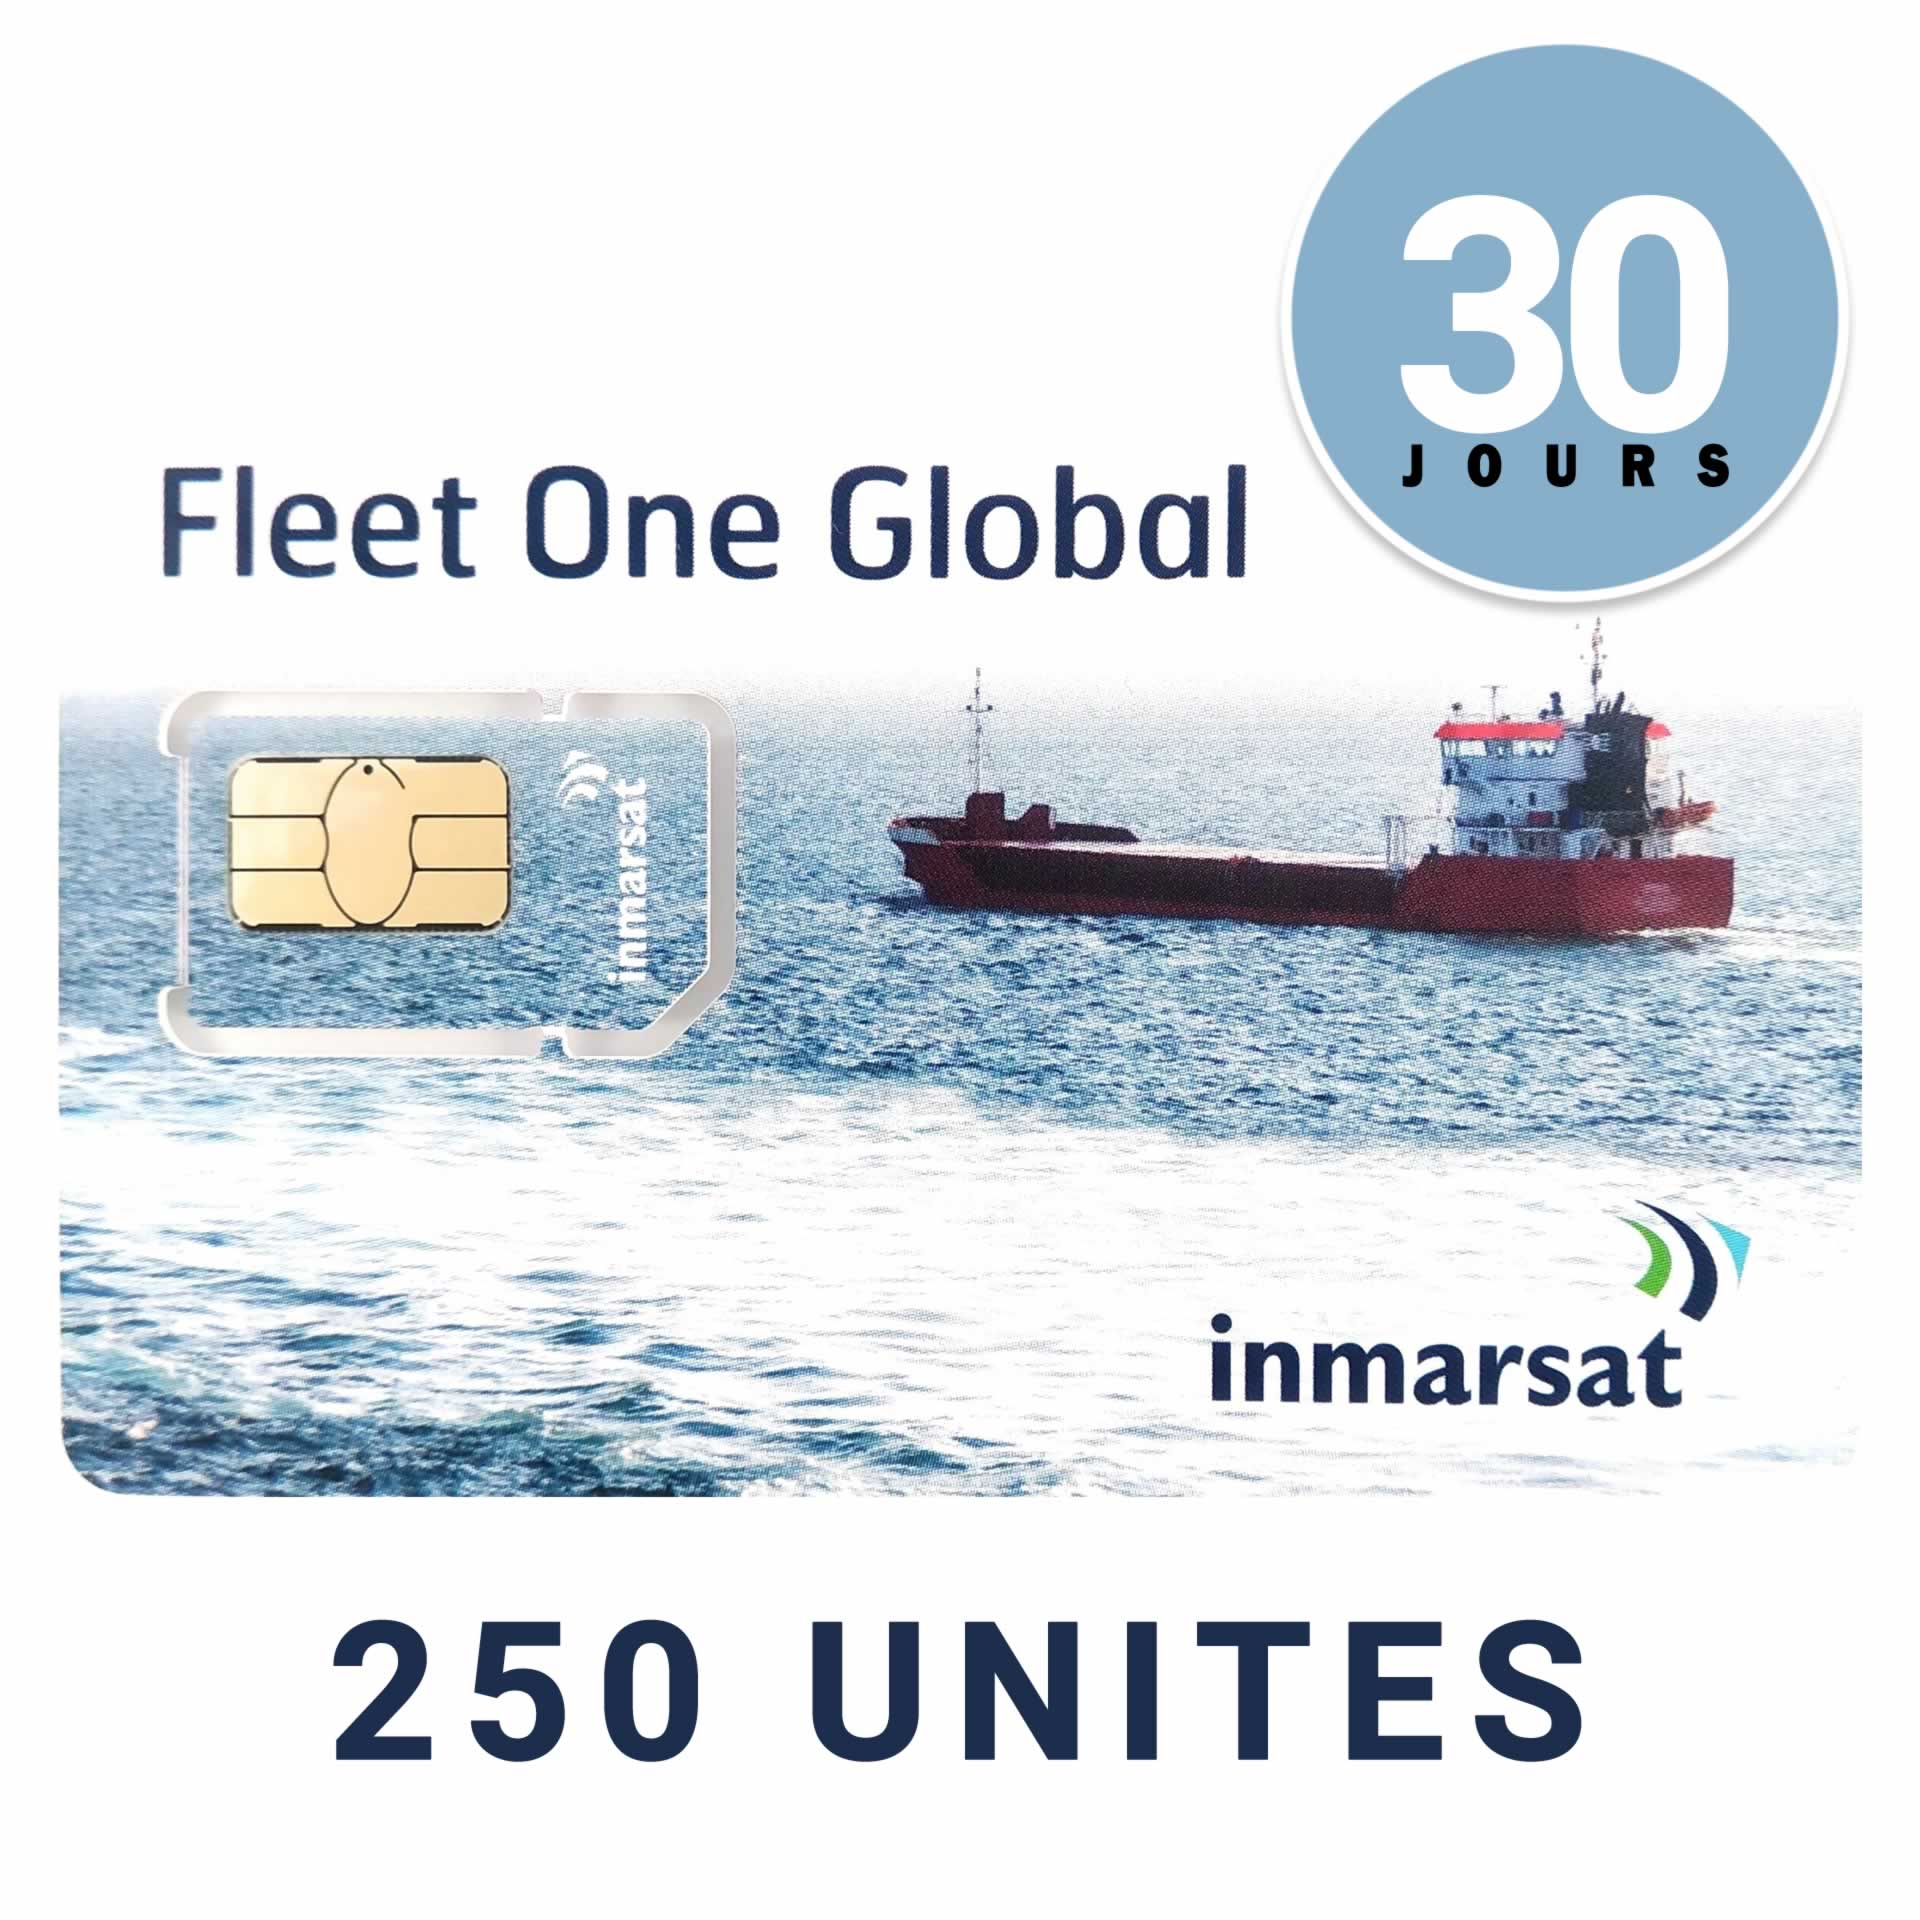 INMARSAT GLOBAL FLEET ONE Prepaid Reloadable Card - 250 UNITS - 30 DAYS